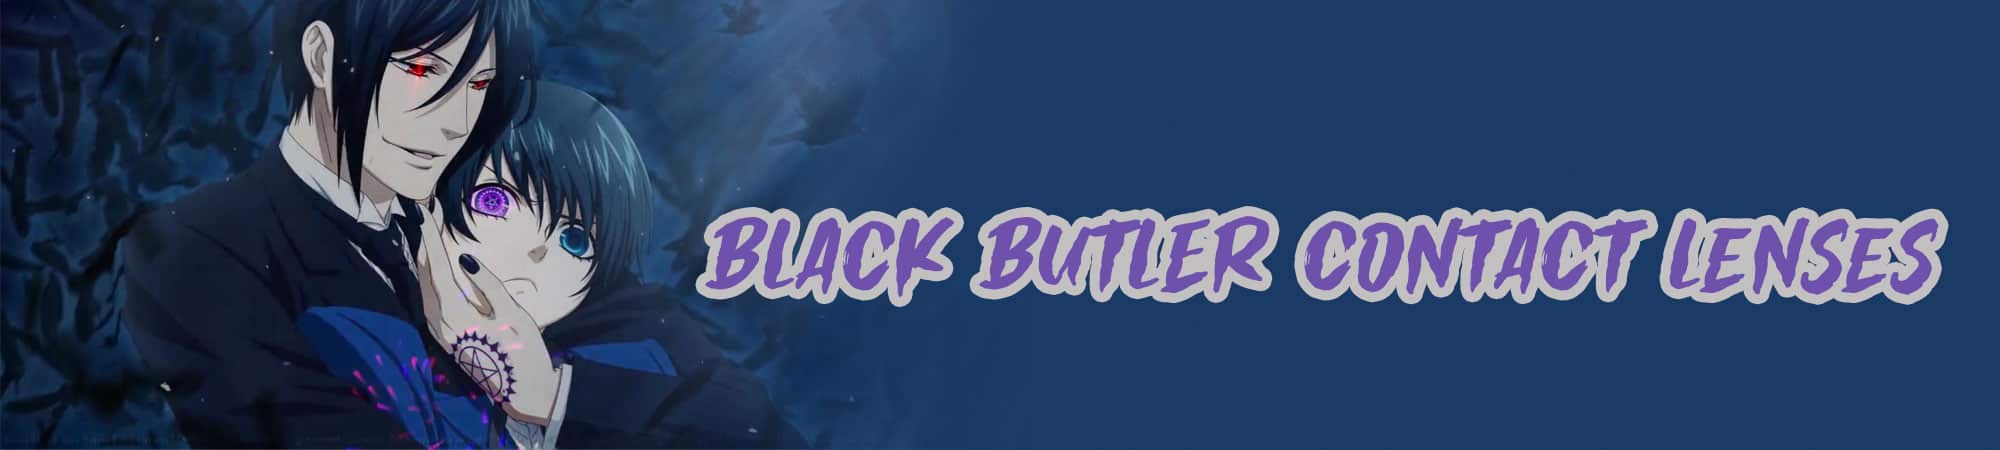 Black Butler Contact Lenses